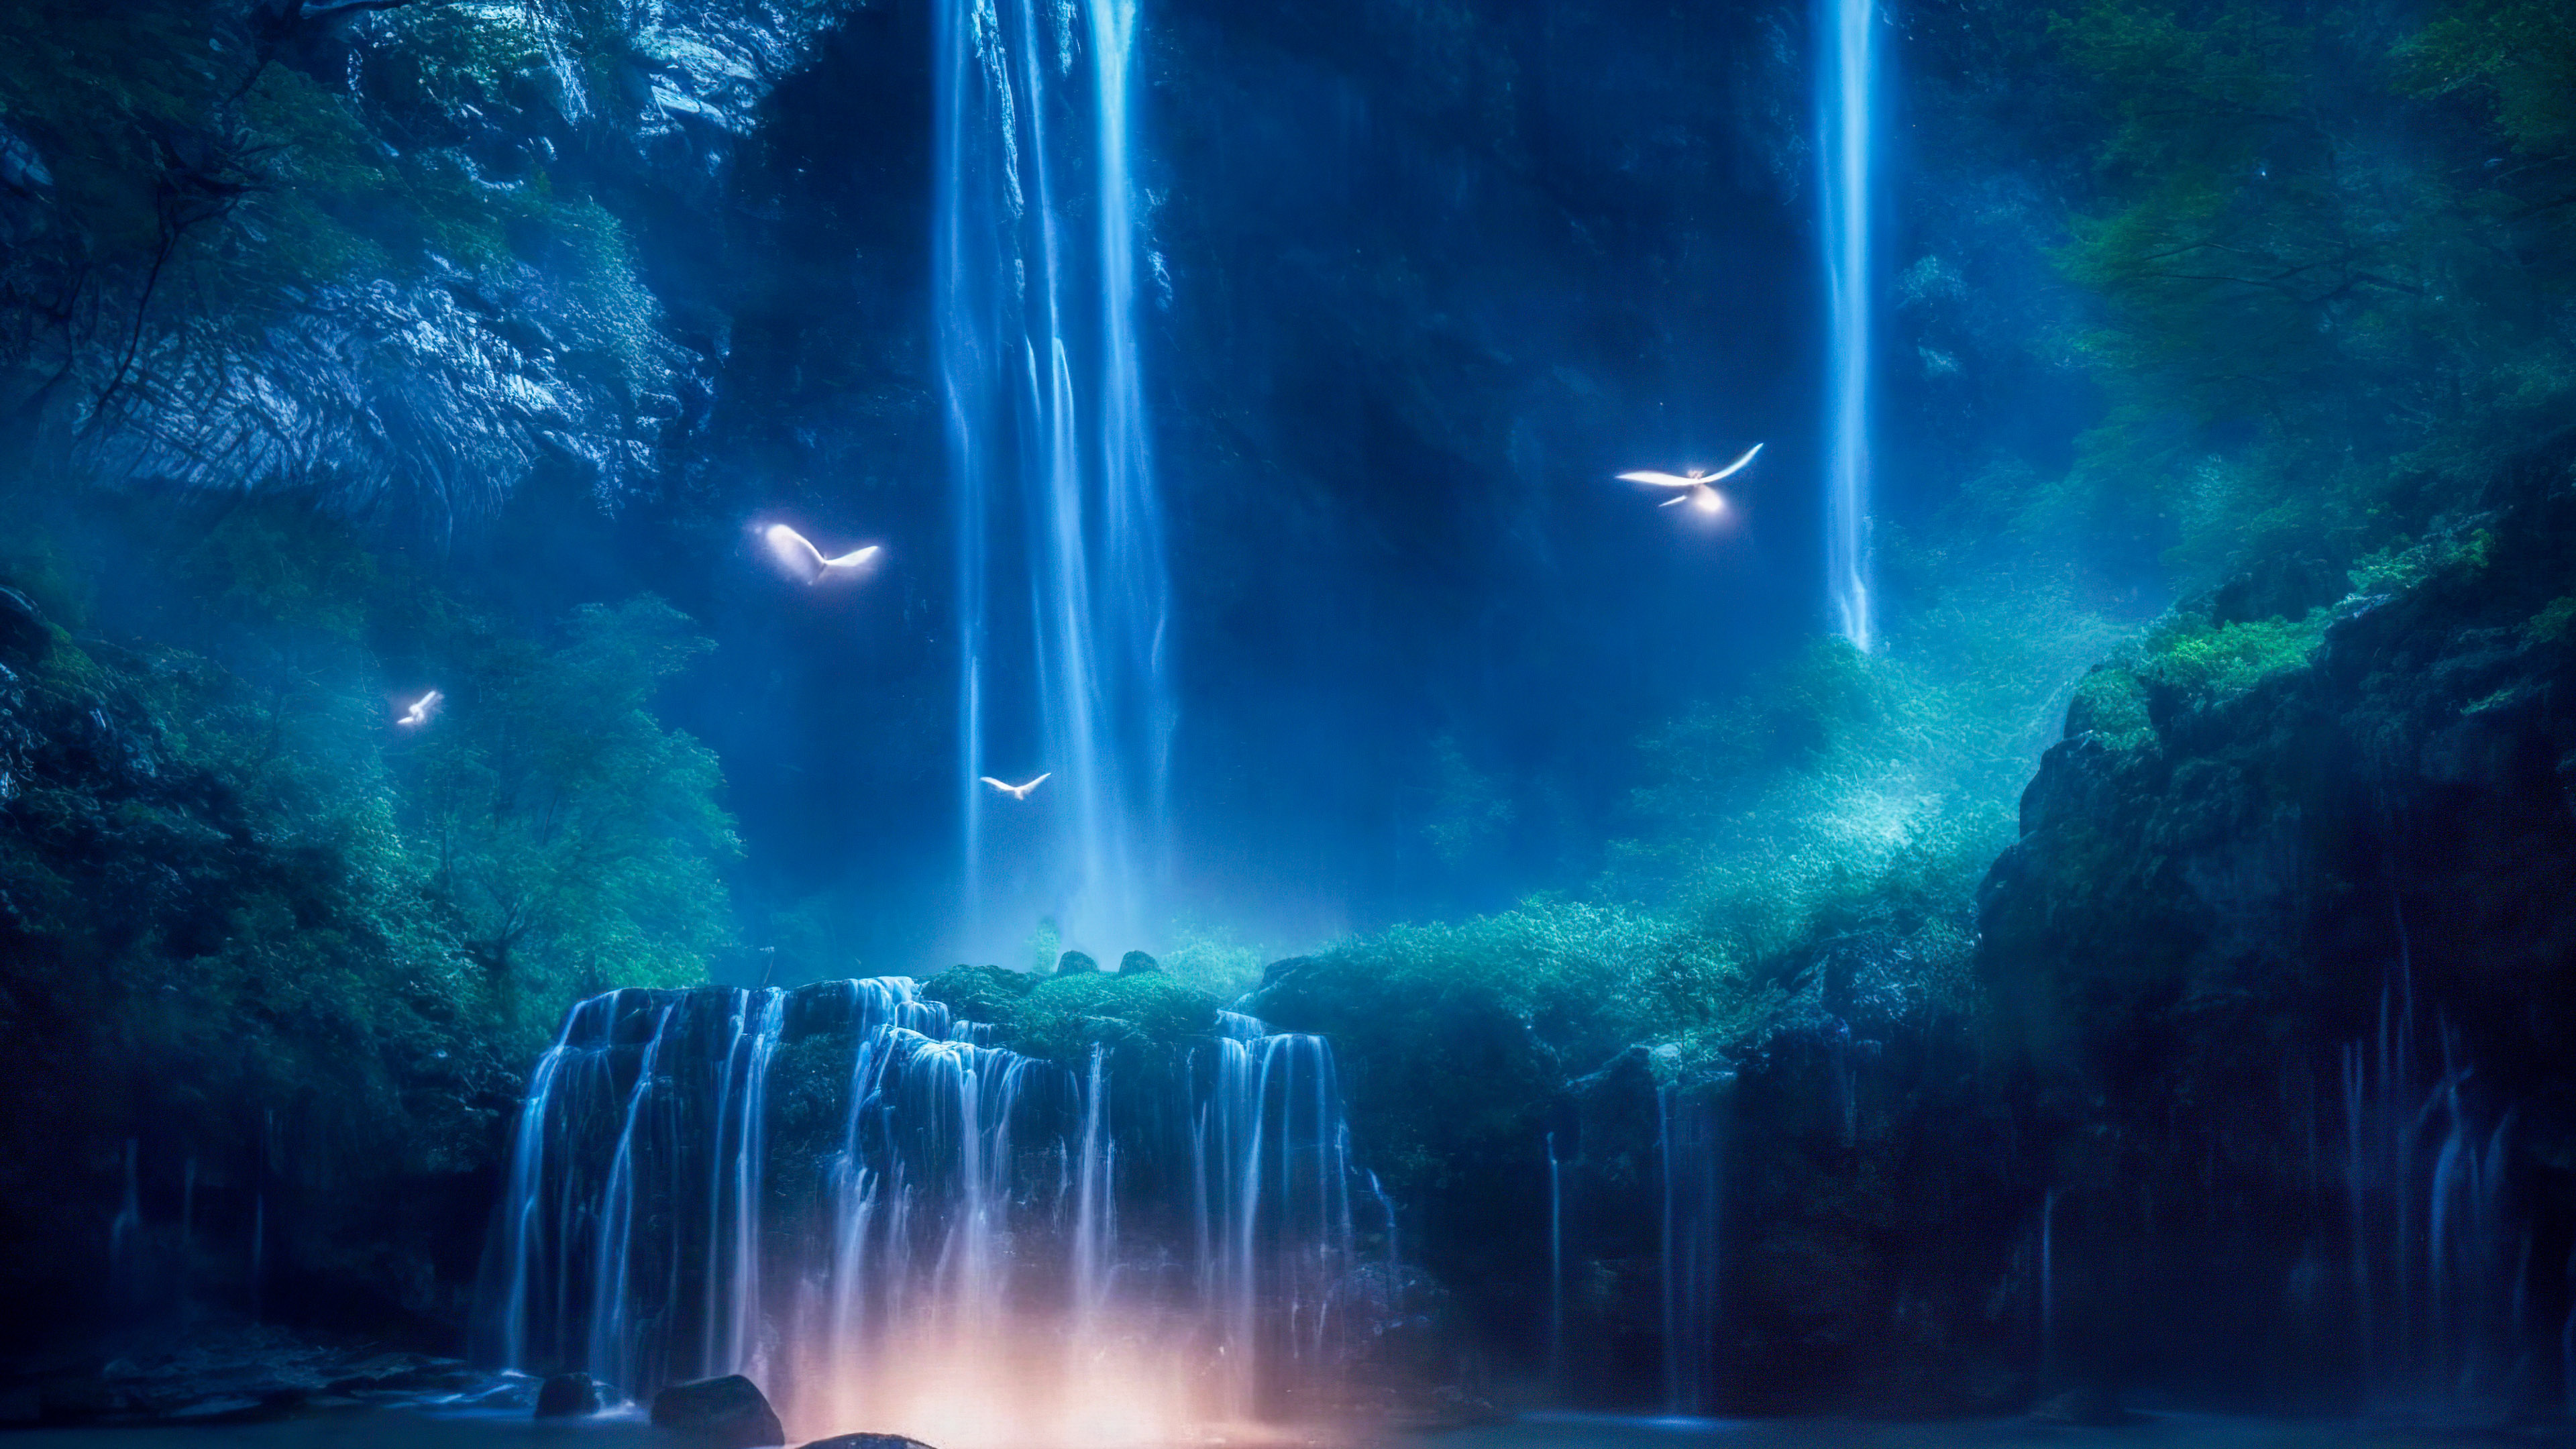 Vivez l'enchantement d'une cascade magique illuminée par le clair de lune, avec des lucioles dansant autour de ses eaux en cascade, à travers notre fond d'écran de paysage en 4K pour votre PC.